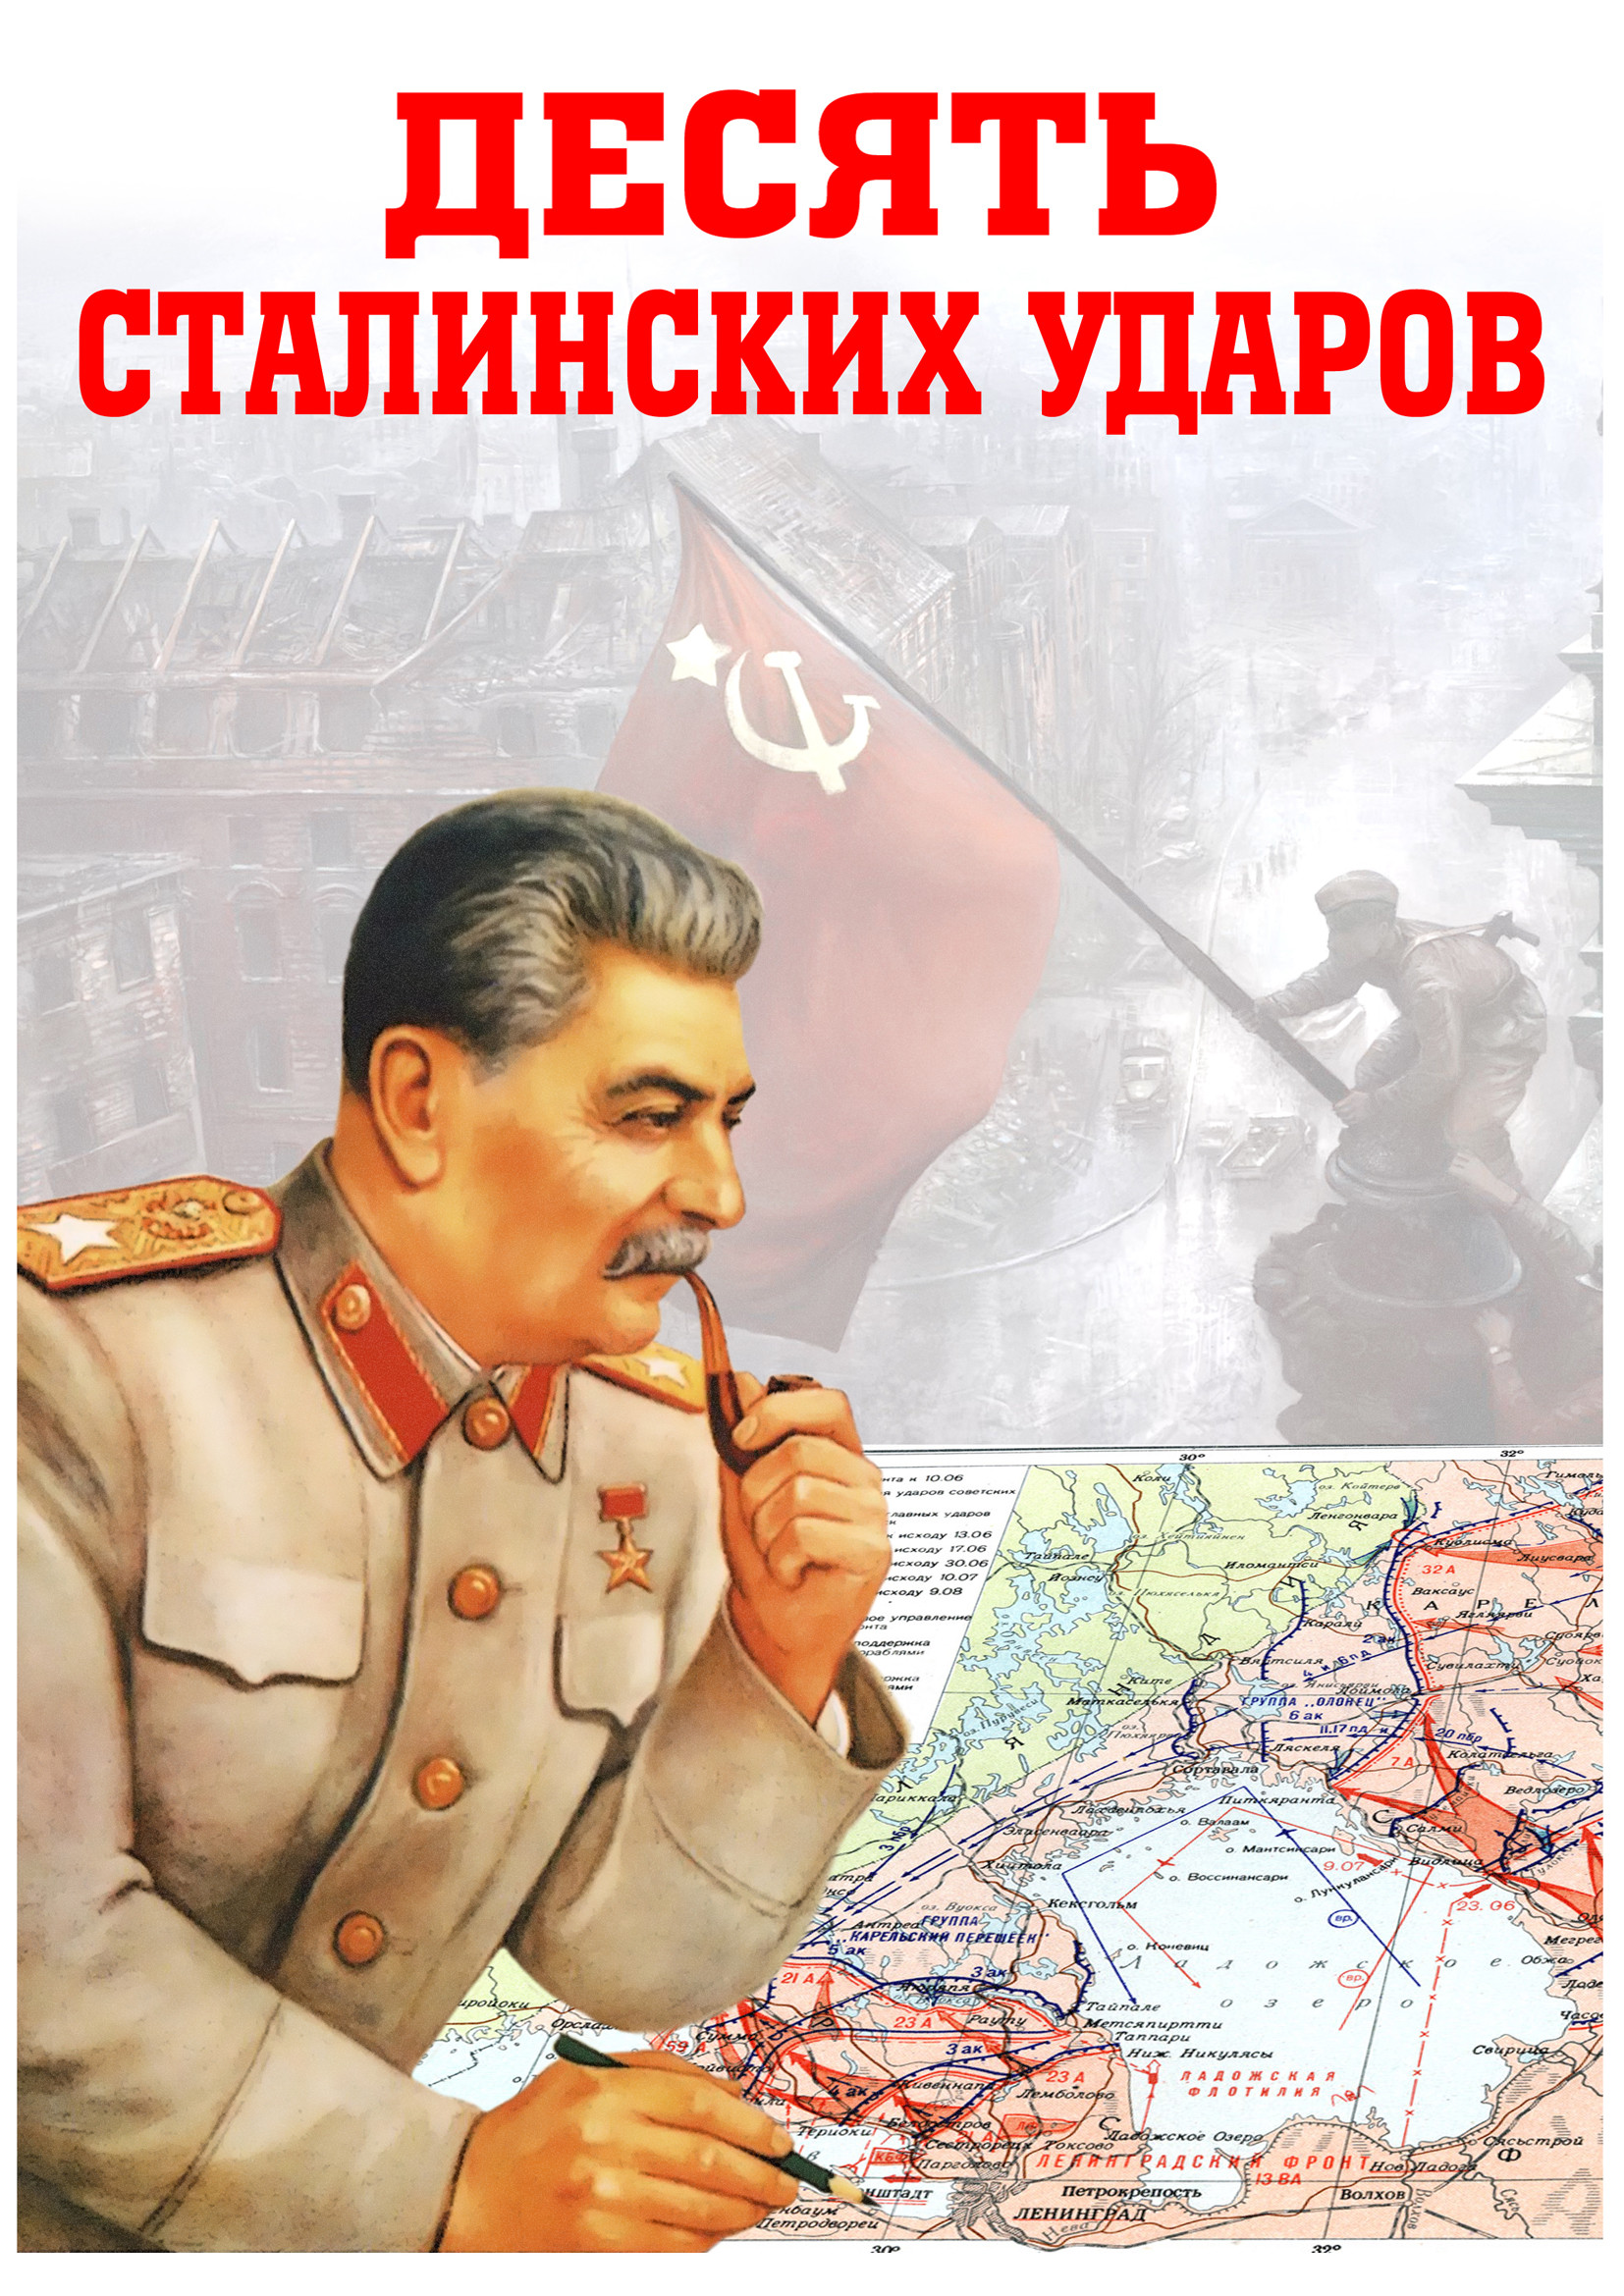 10 сталинских ударов.